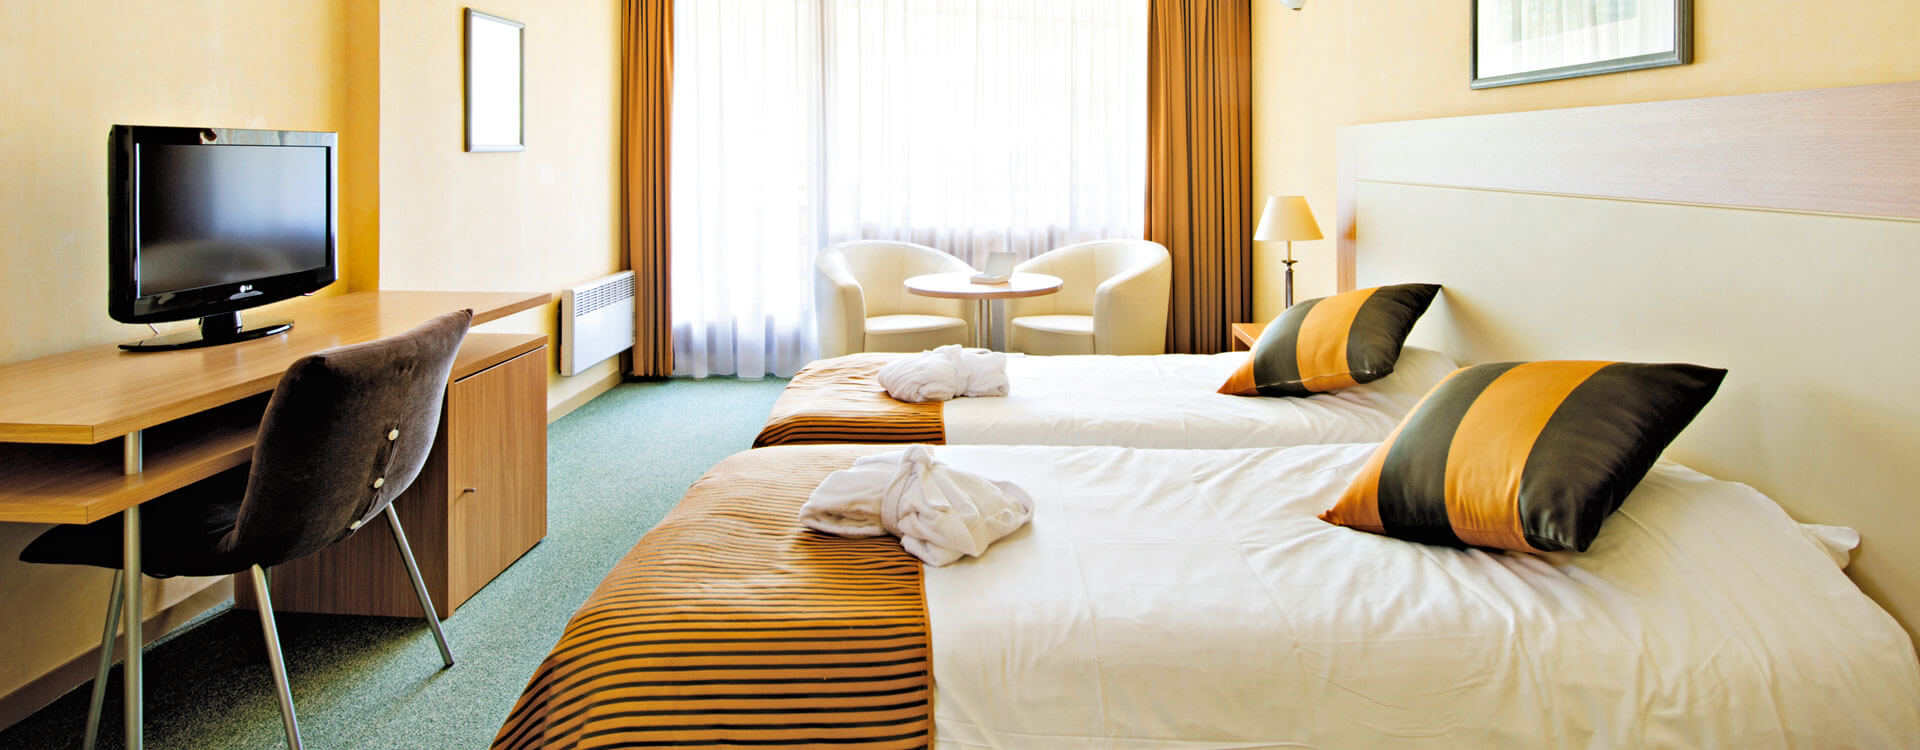 Chambres - Hôtel & spa*** La Villa Marlioz à Aix-les-Bains